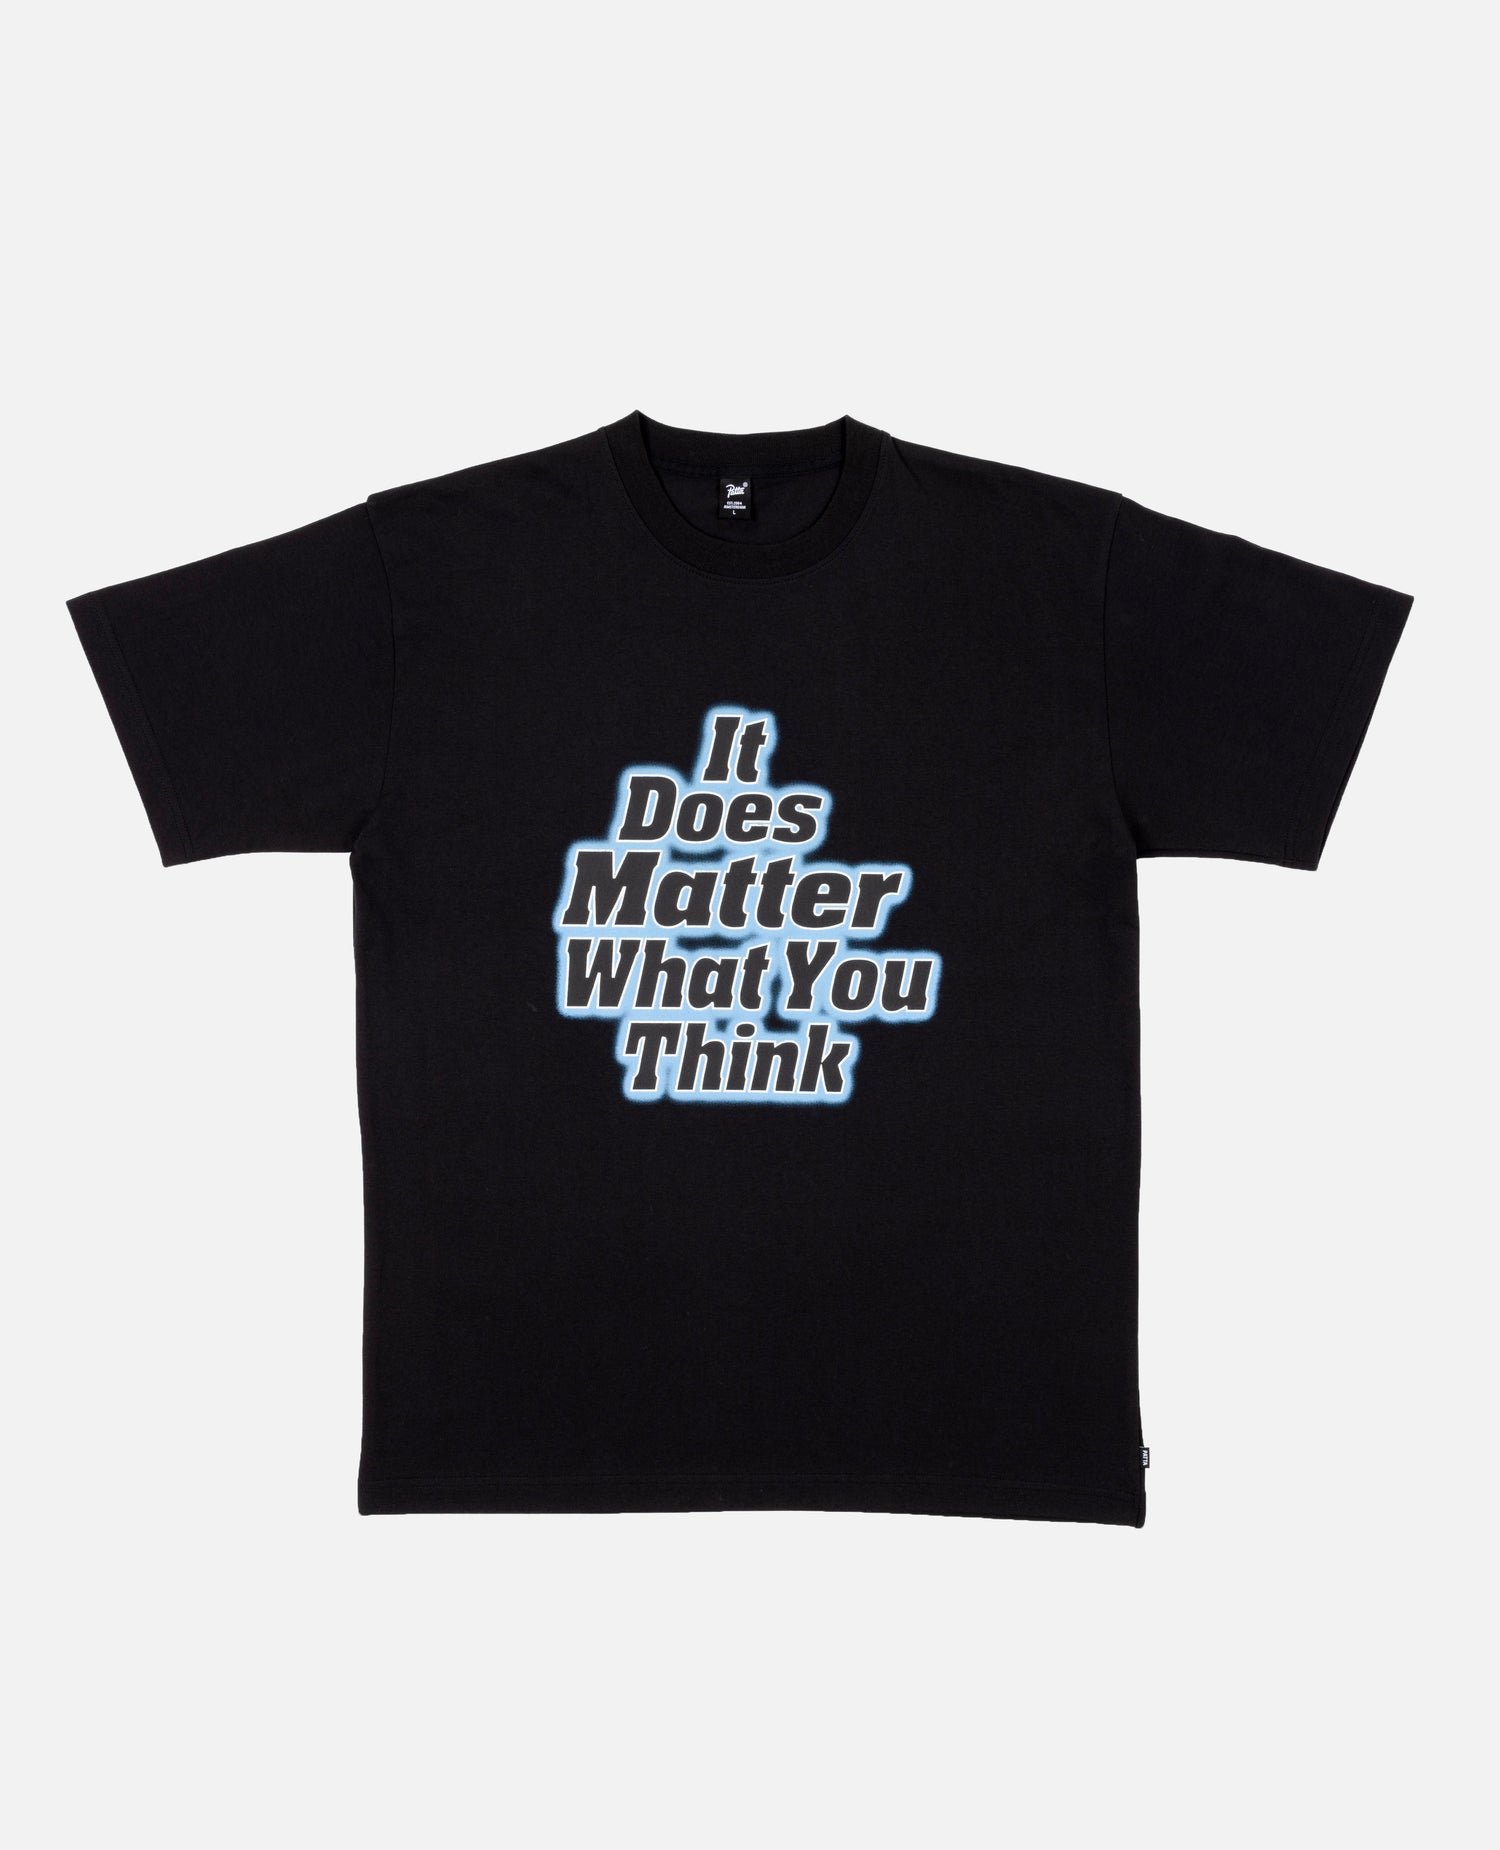 T-shirt Patta, importa cosa pensi (nera)